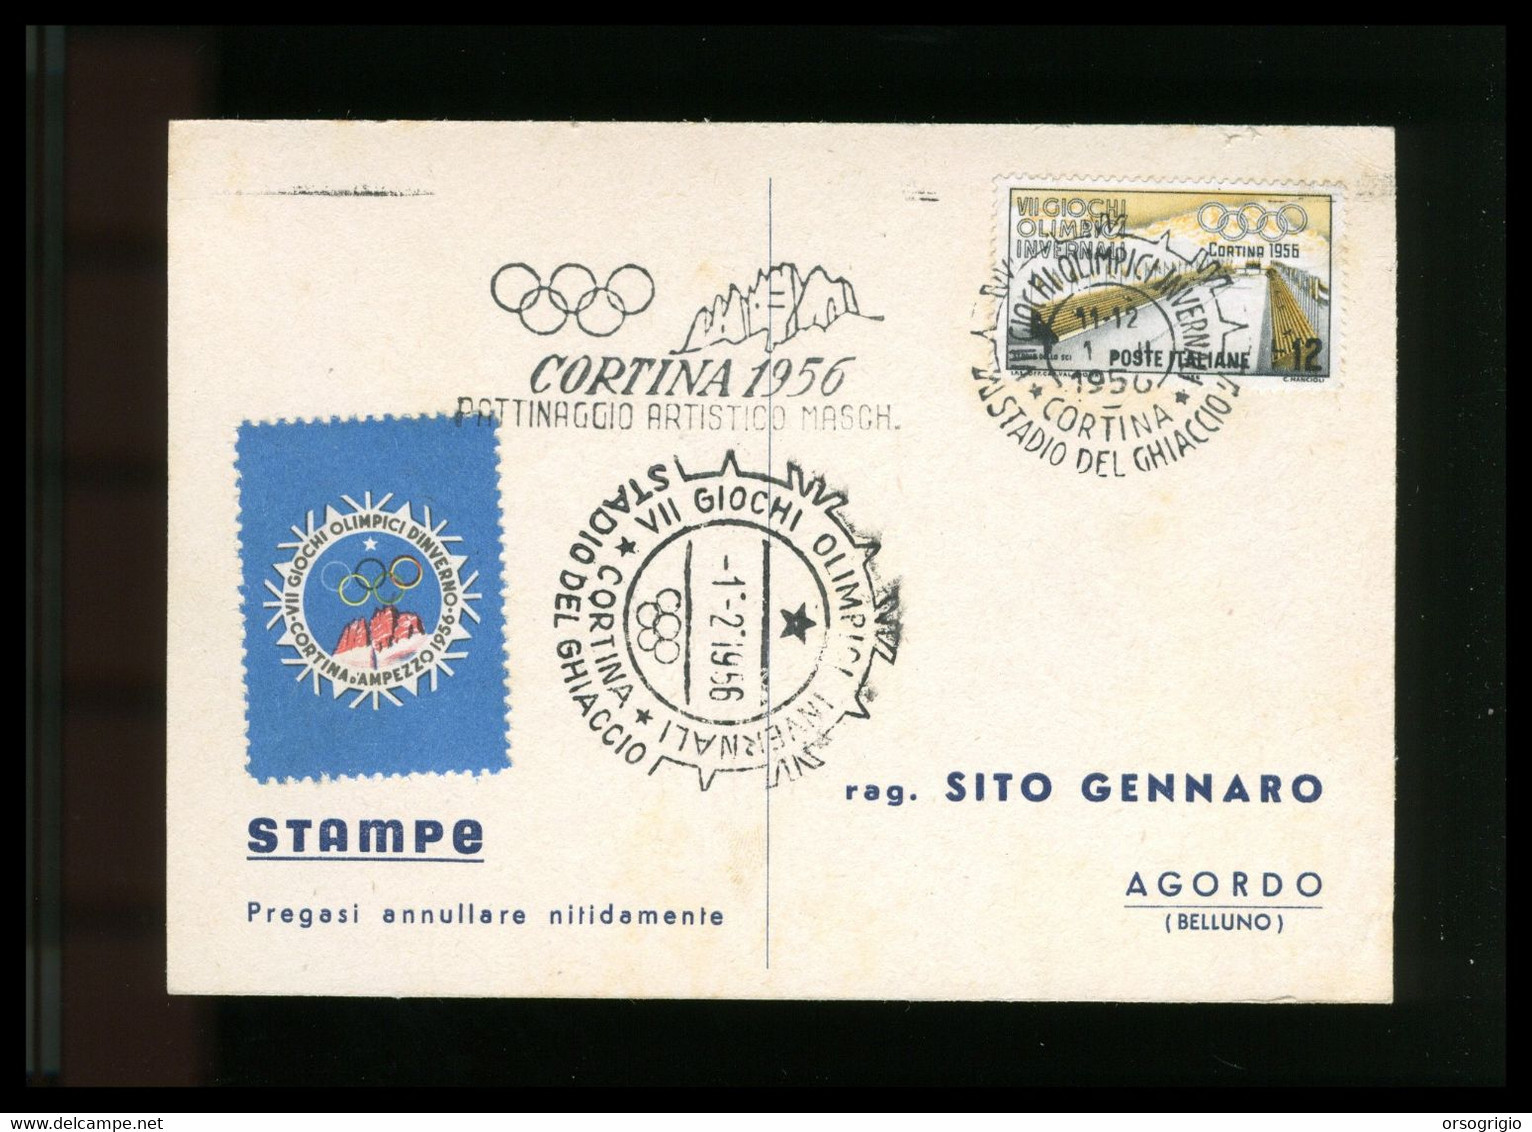 ITALIA - 1956 GIOCHI OLIMPICI INVERNALI Di CORTINA D'AMPEZZO - PATTINAGGIO ARTISTICO MASCHILE -  1-2-1956    LUSSO - Hiver 1956: Cortina D'Ampezzo